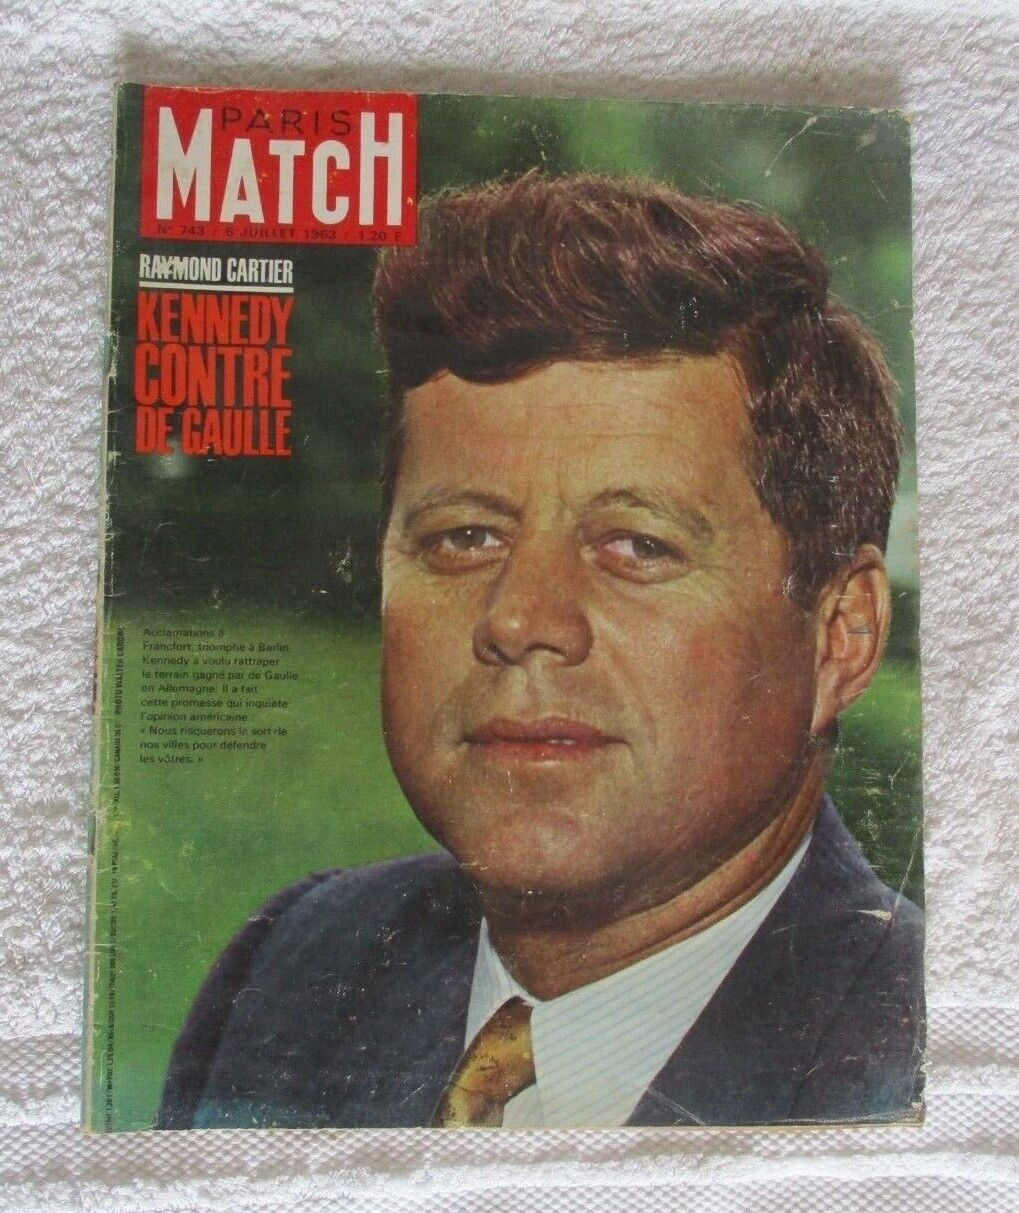 PARIS MATCH N°743 JULY 6, 1963 RAYMOND CARTIER KENNEDY CONTRE DE GAULLE